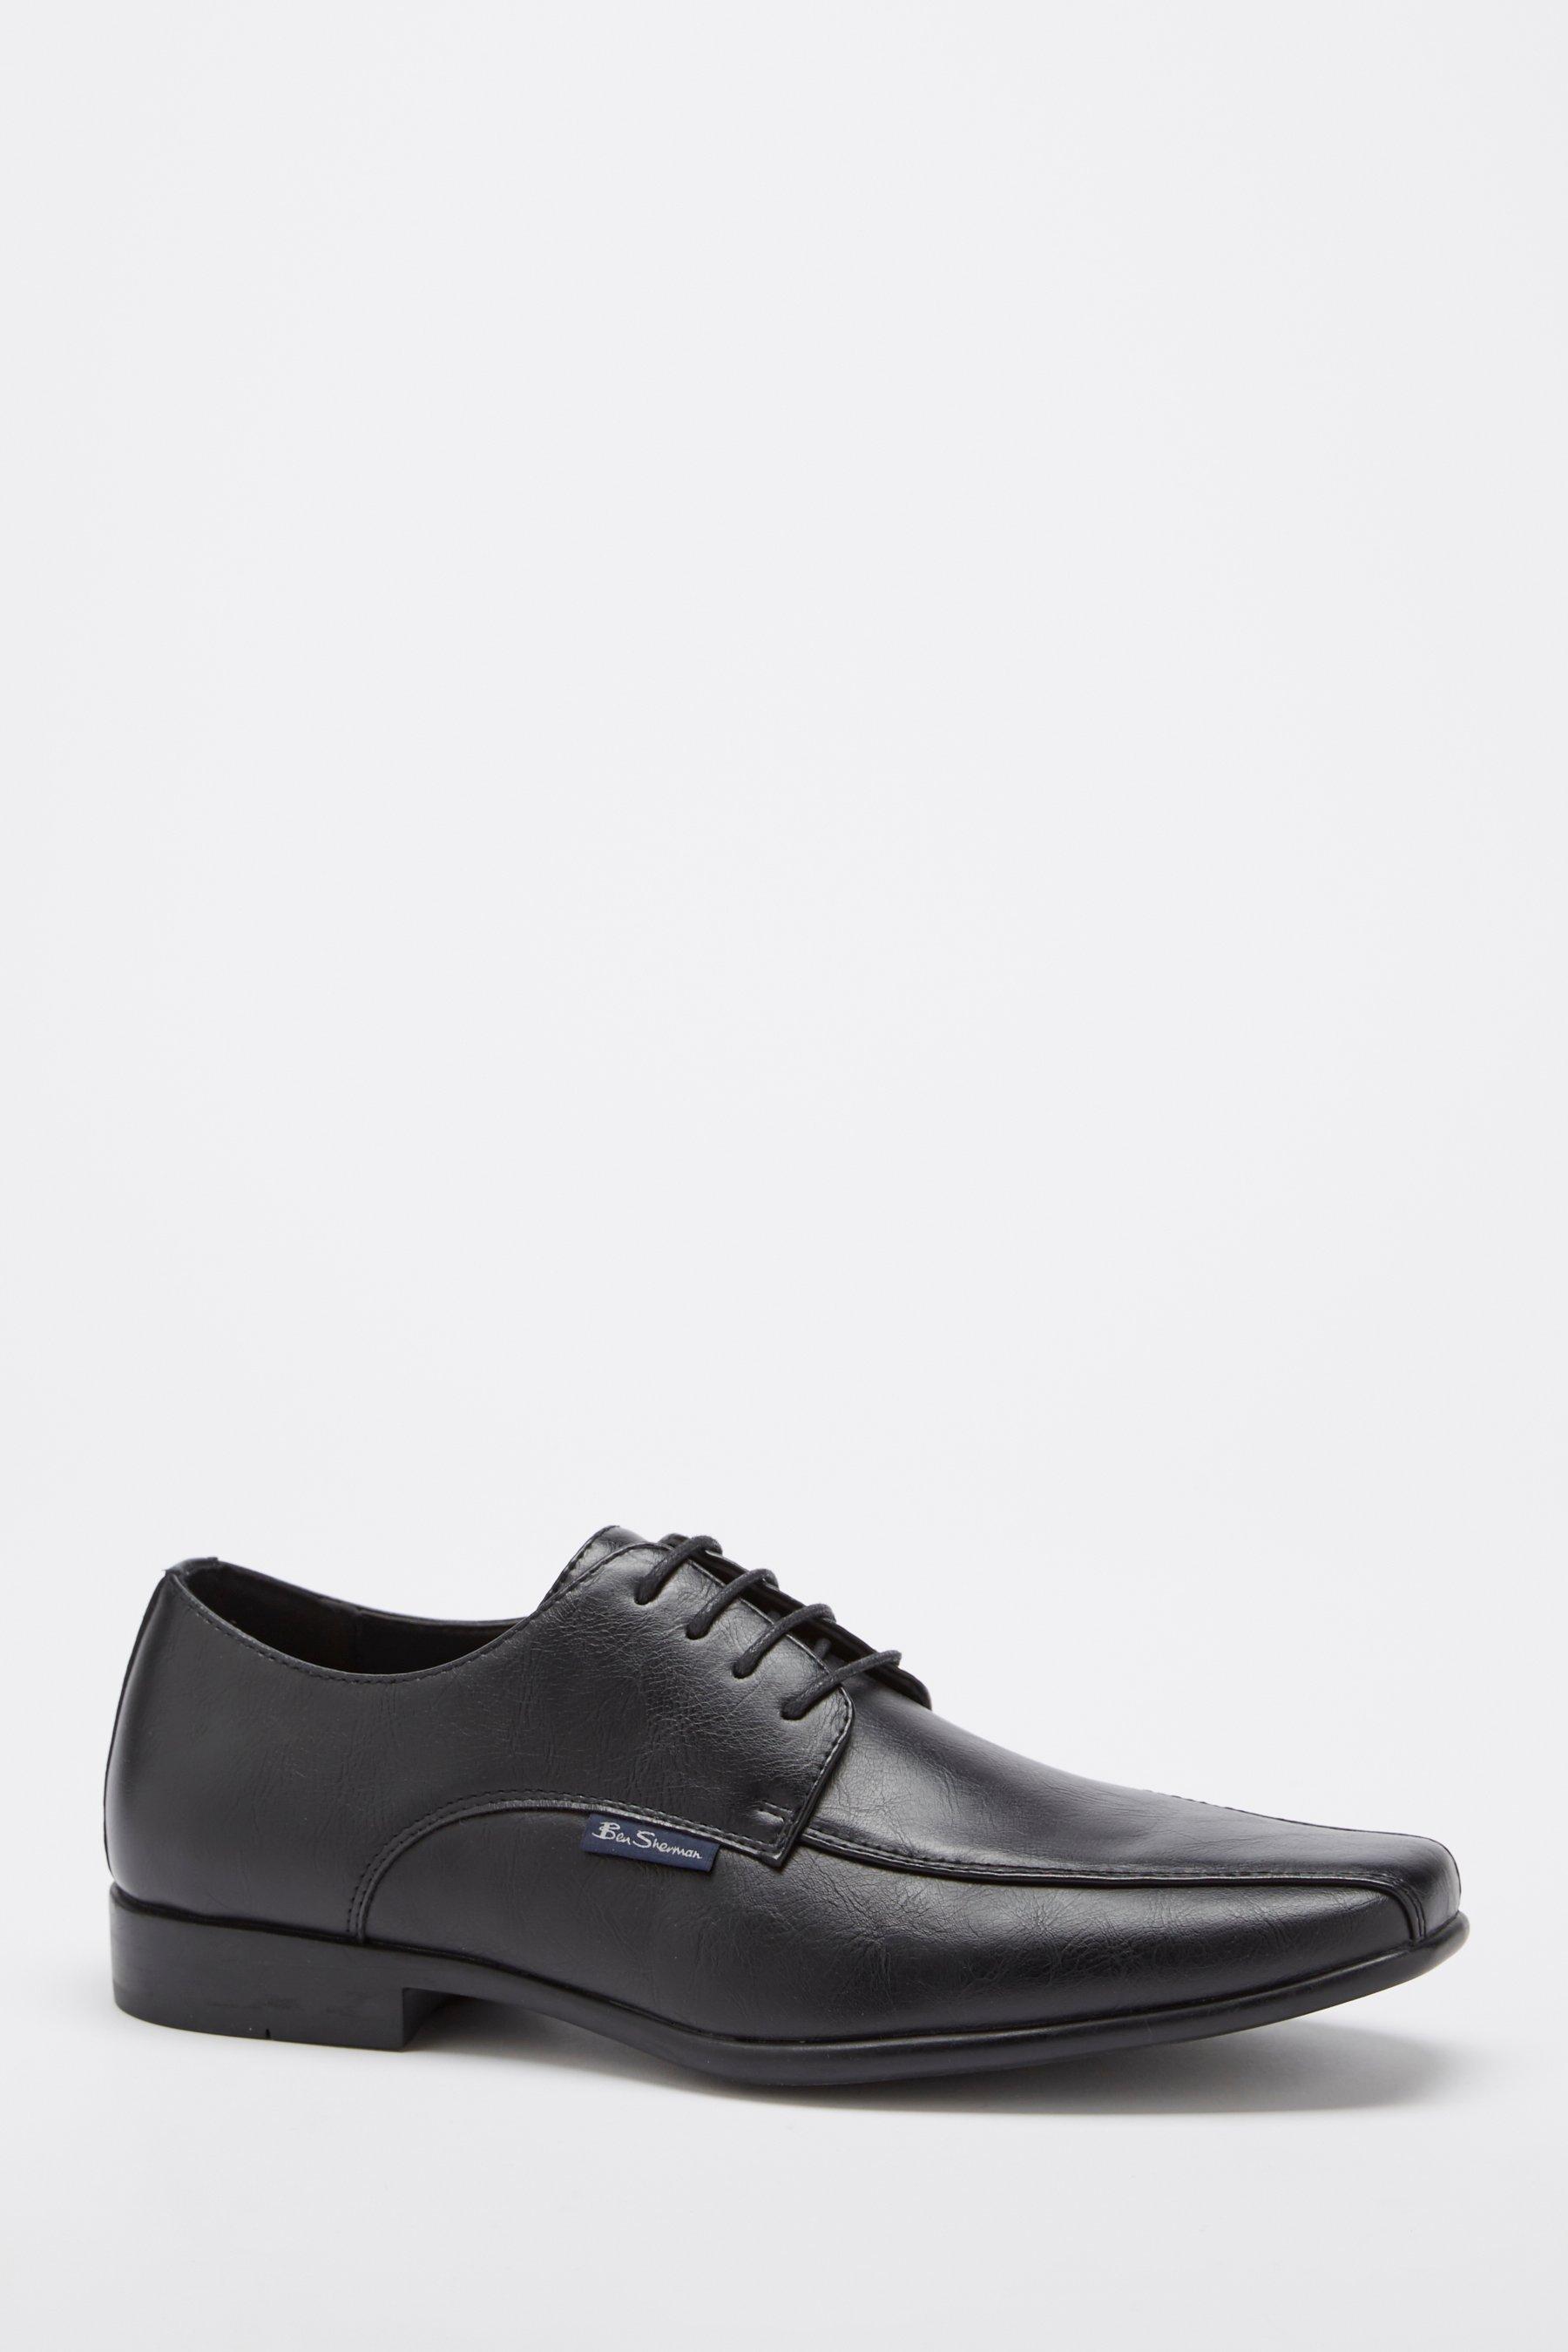 ben sherman durham black lace up shoes - mens - size: 8